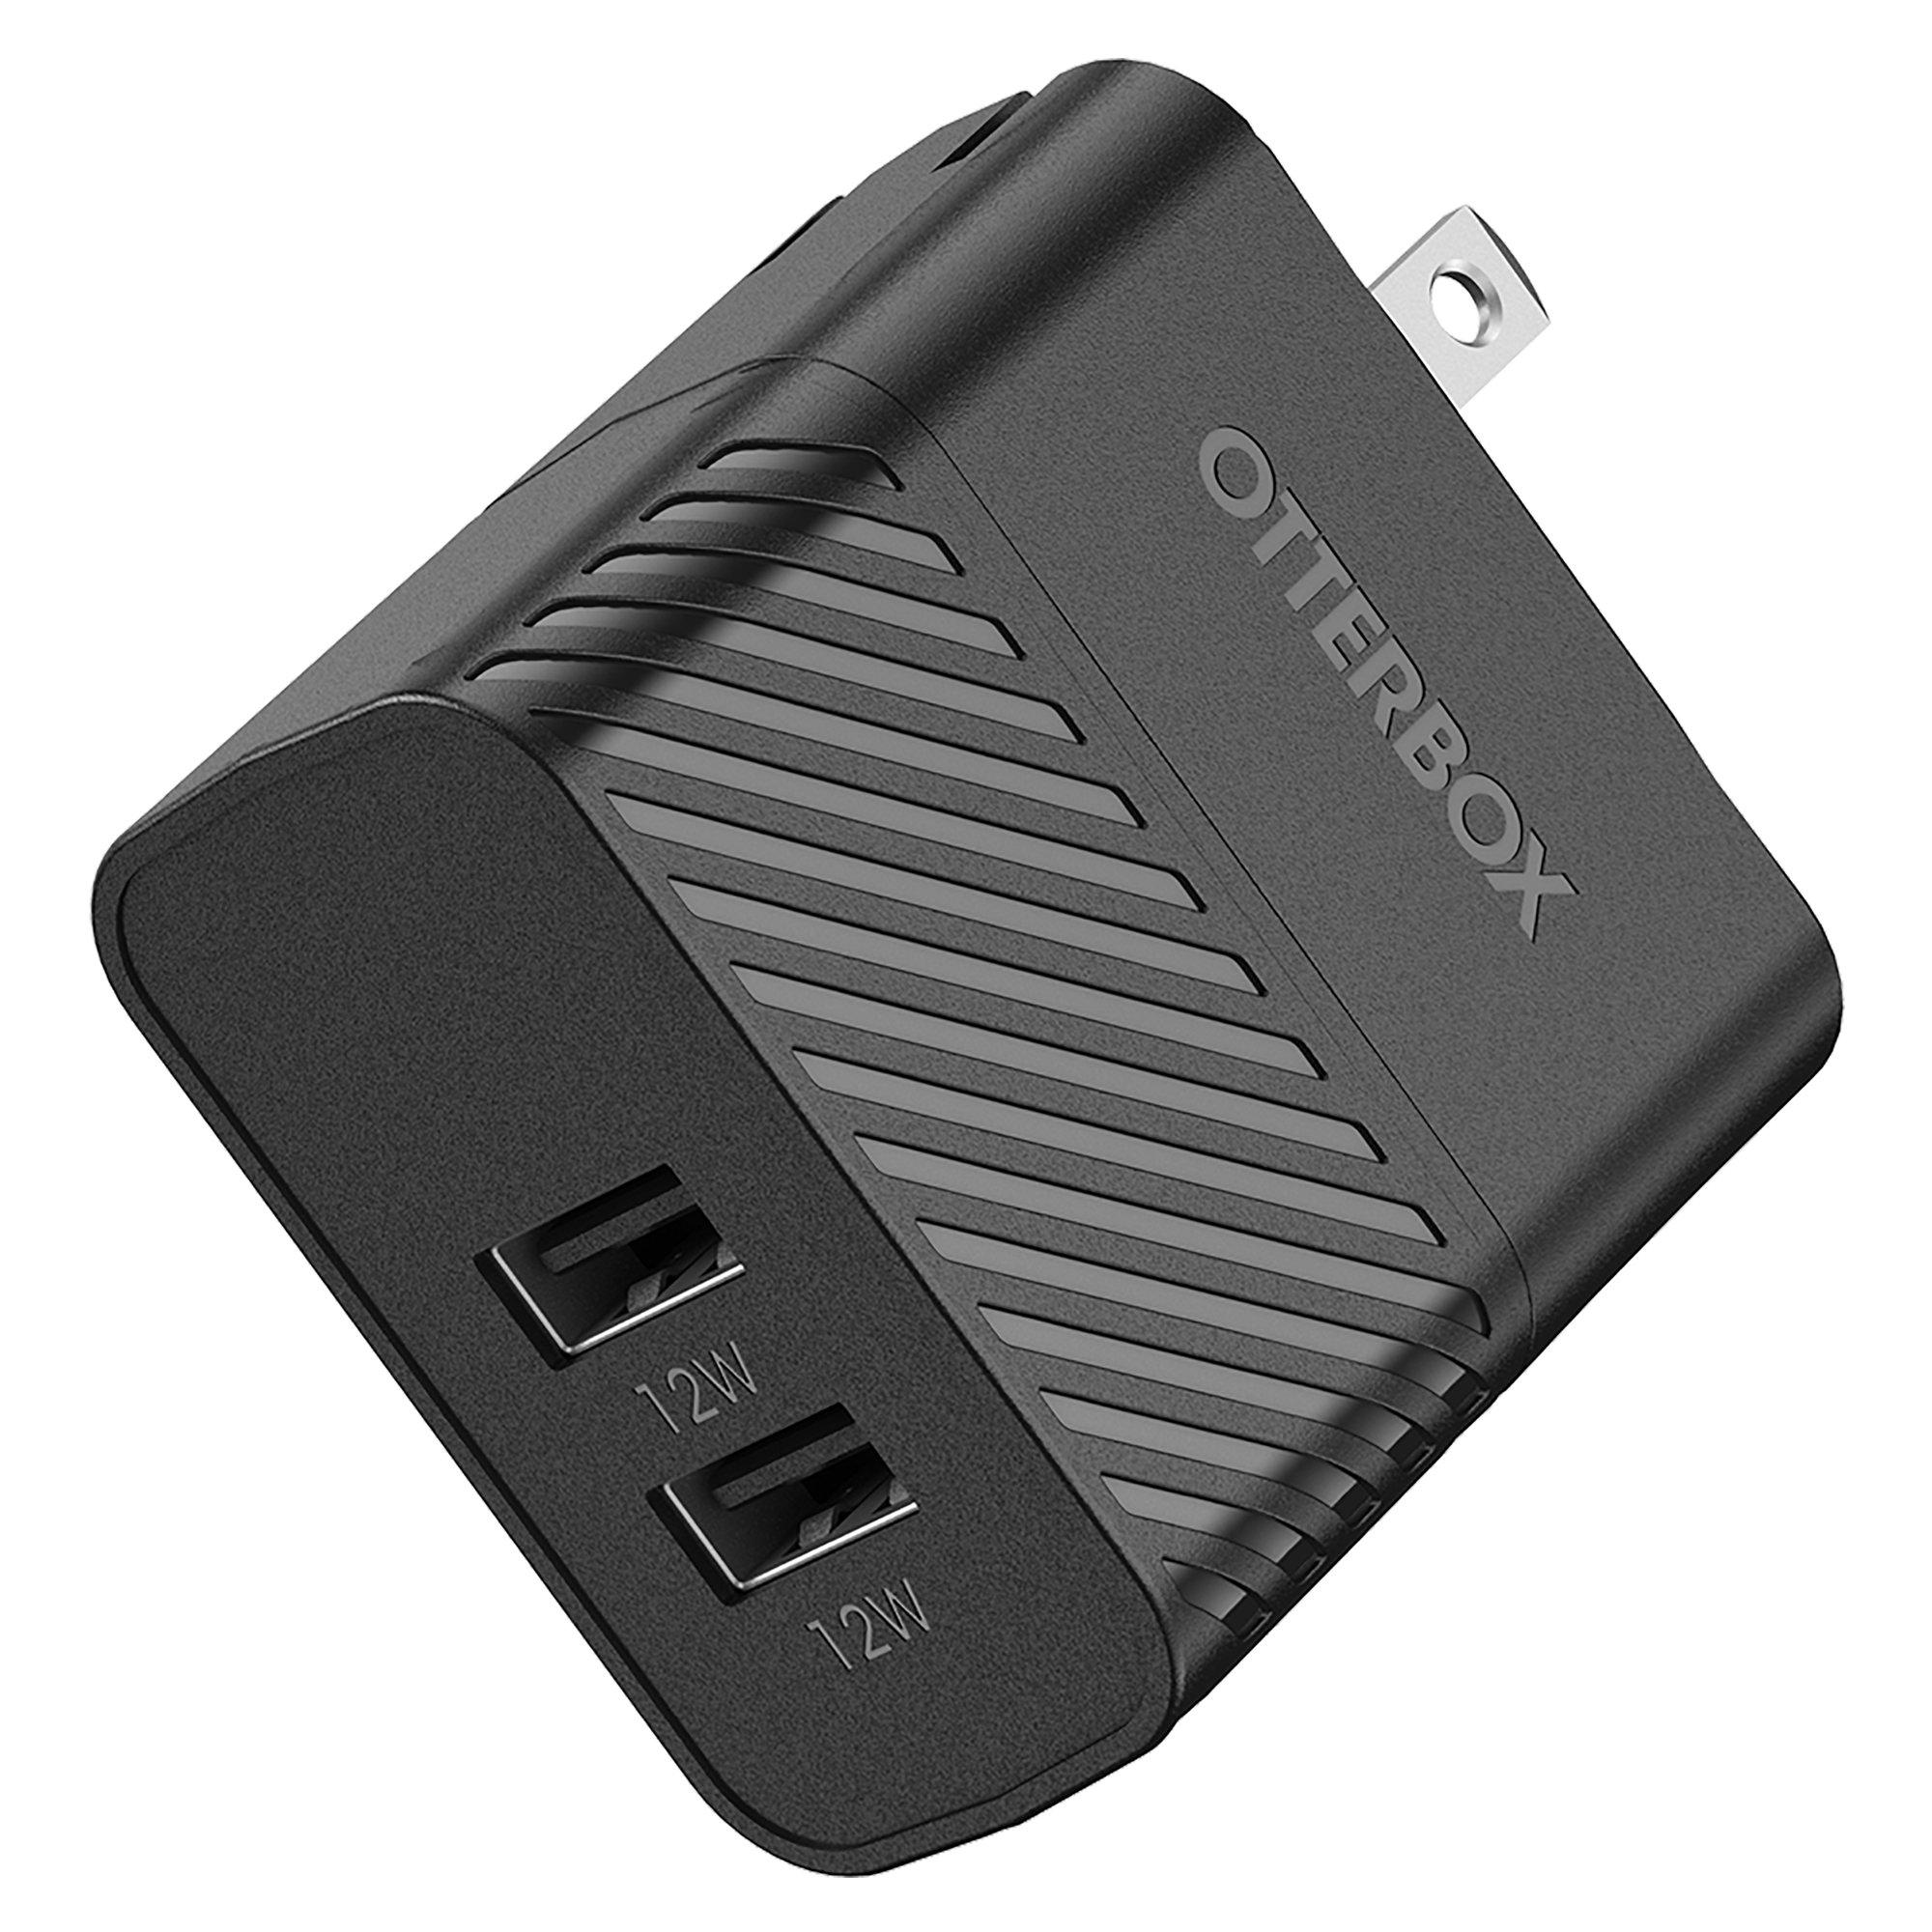 diep Keel Bijlage Otterbox Premium Dual USB-A Port 24W Wall Charger | GameStop